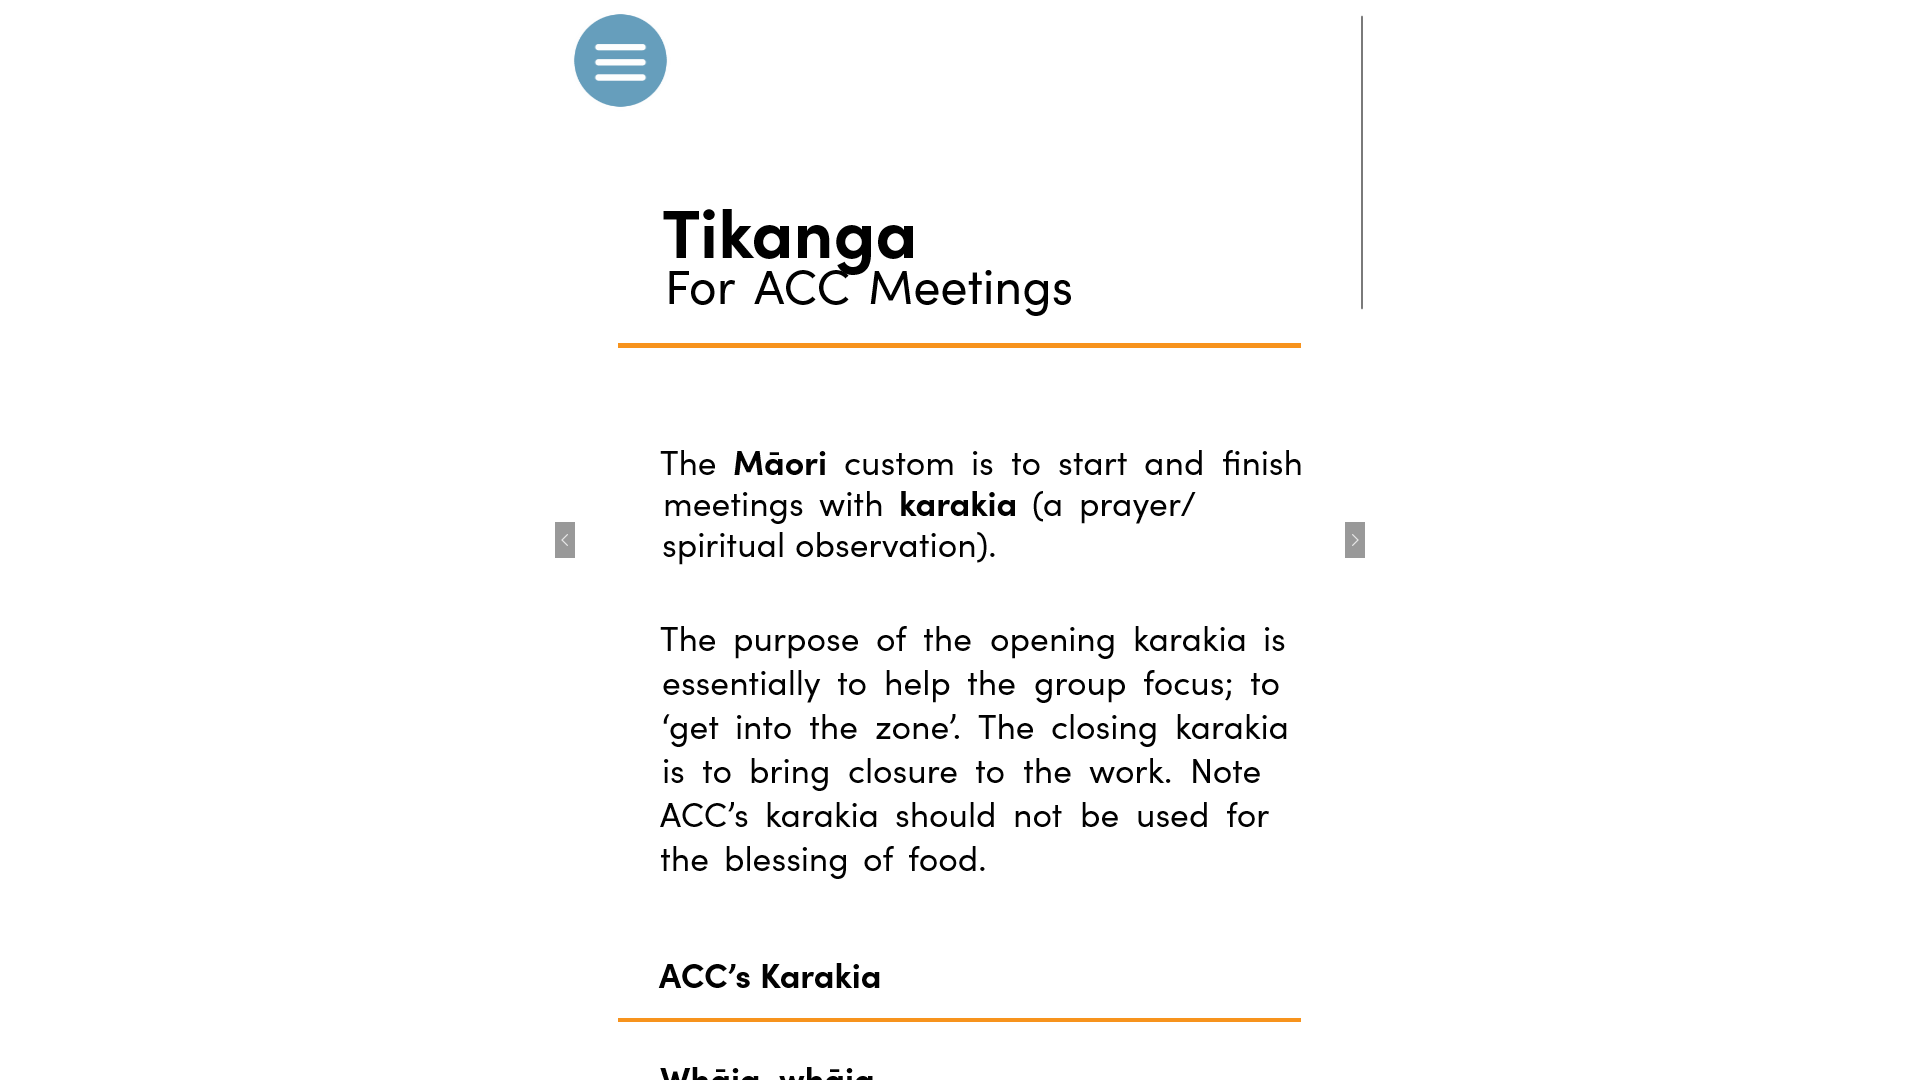 Tikanga for ACC